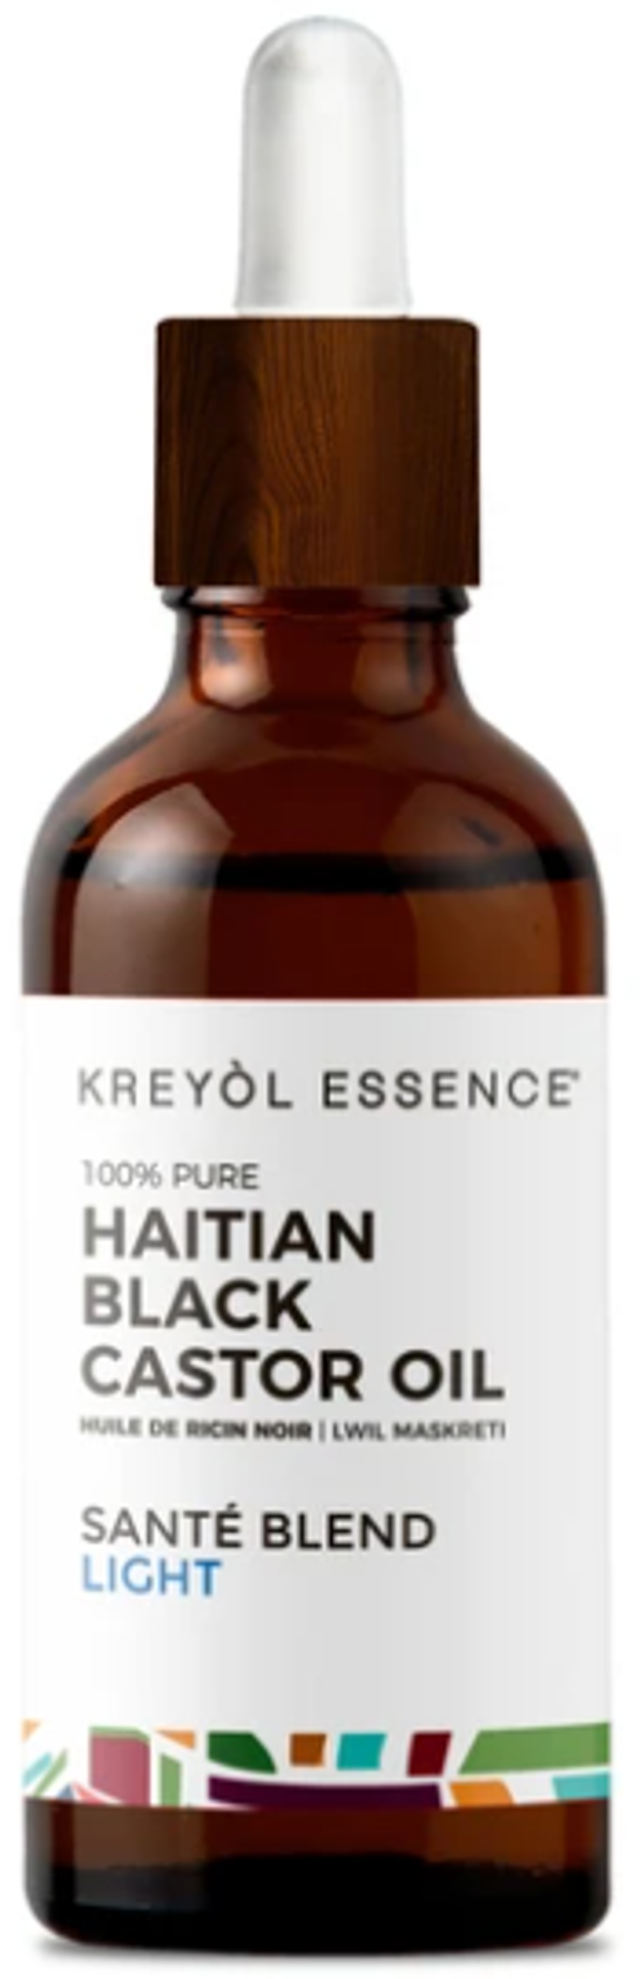  Kreyol Essence Haitian Black Castor Oil LIGHT- (Lwil Maskreti) - 3.4 oz